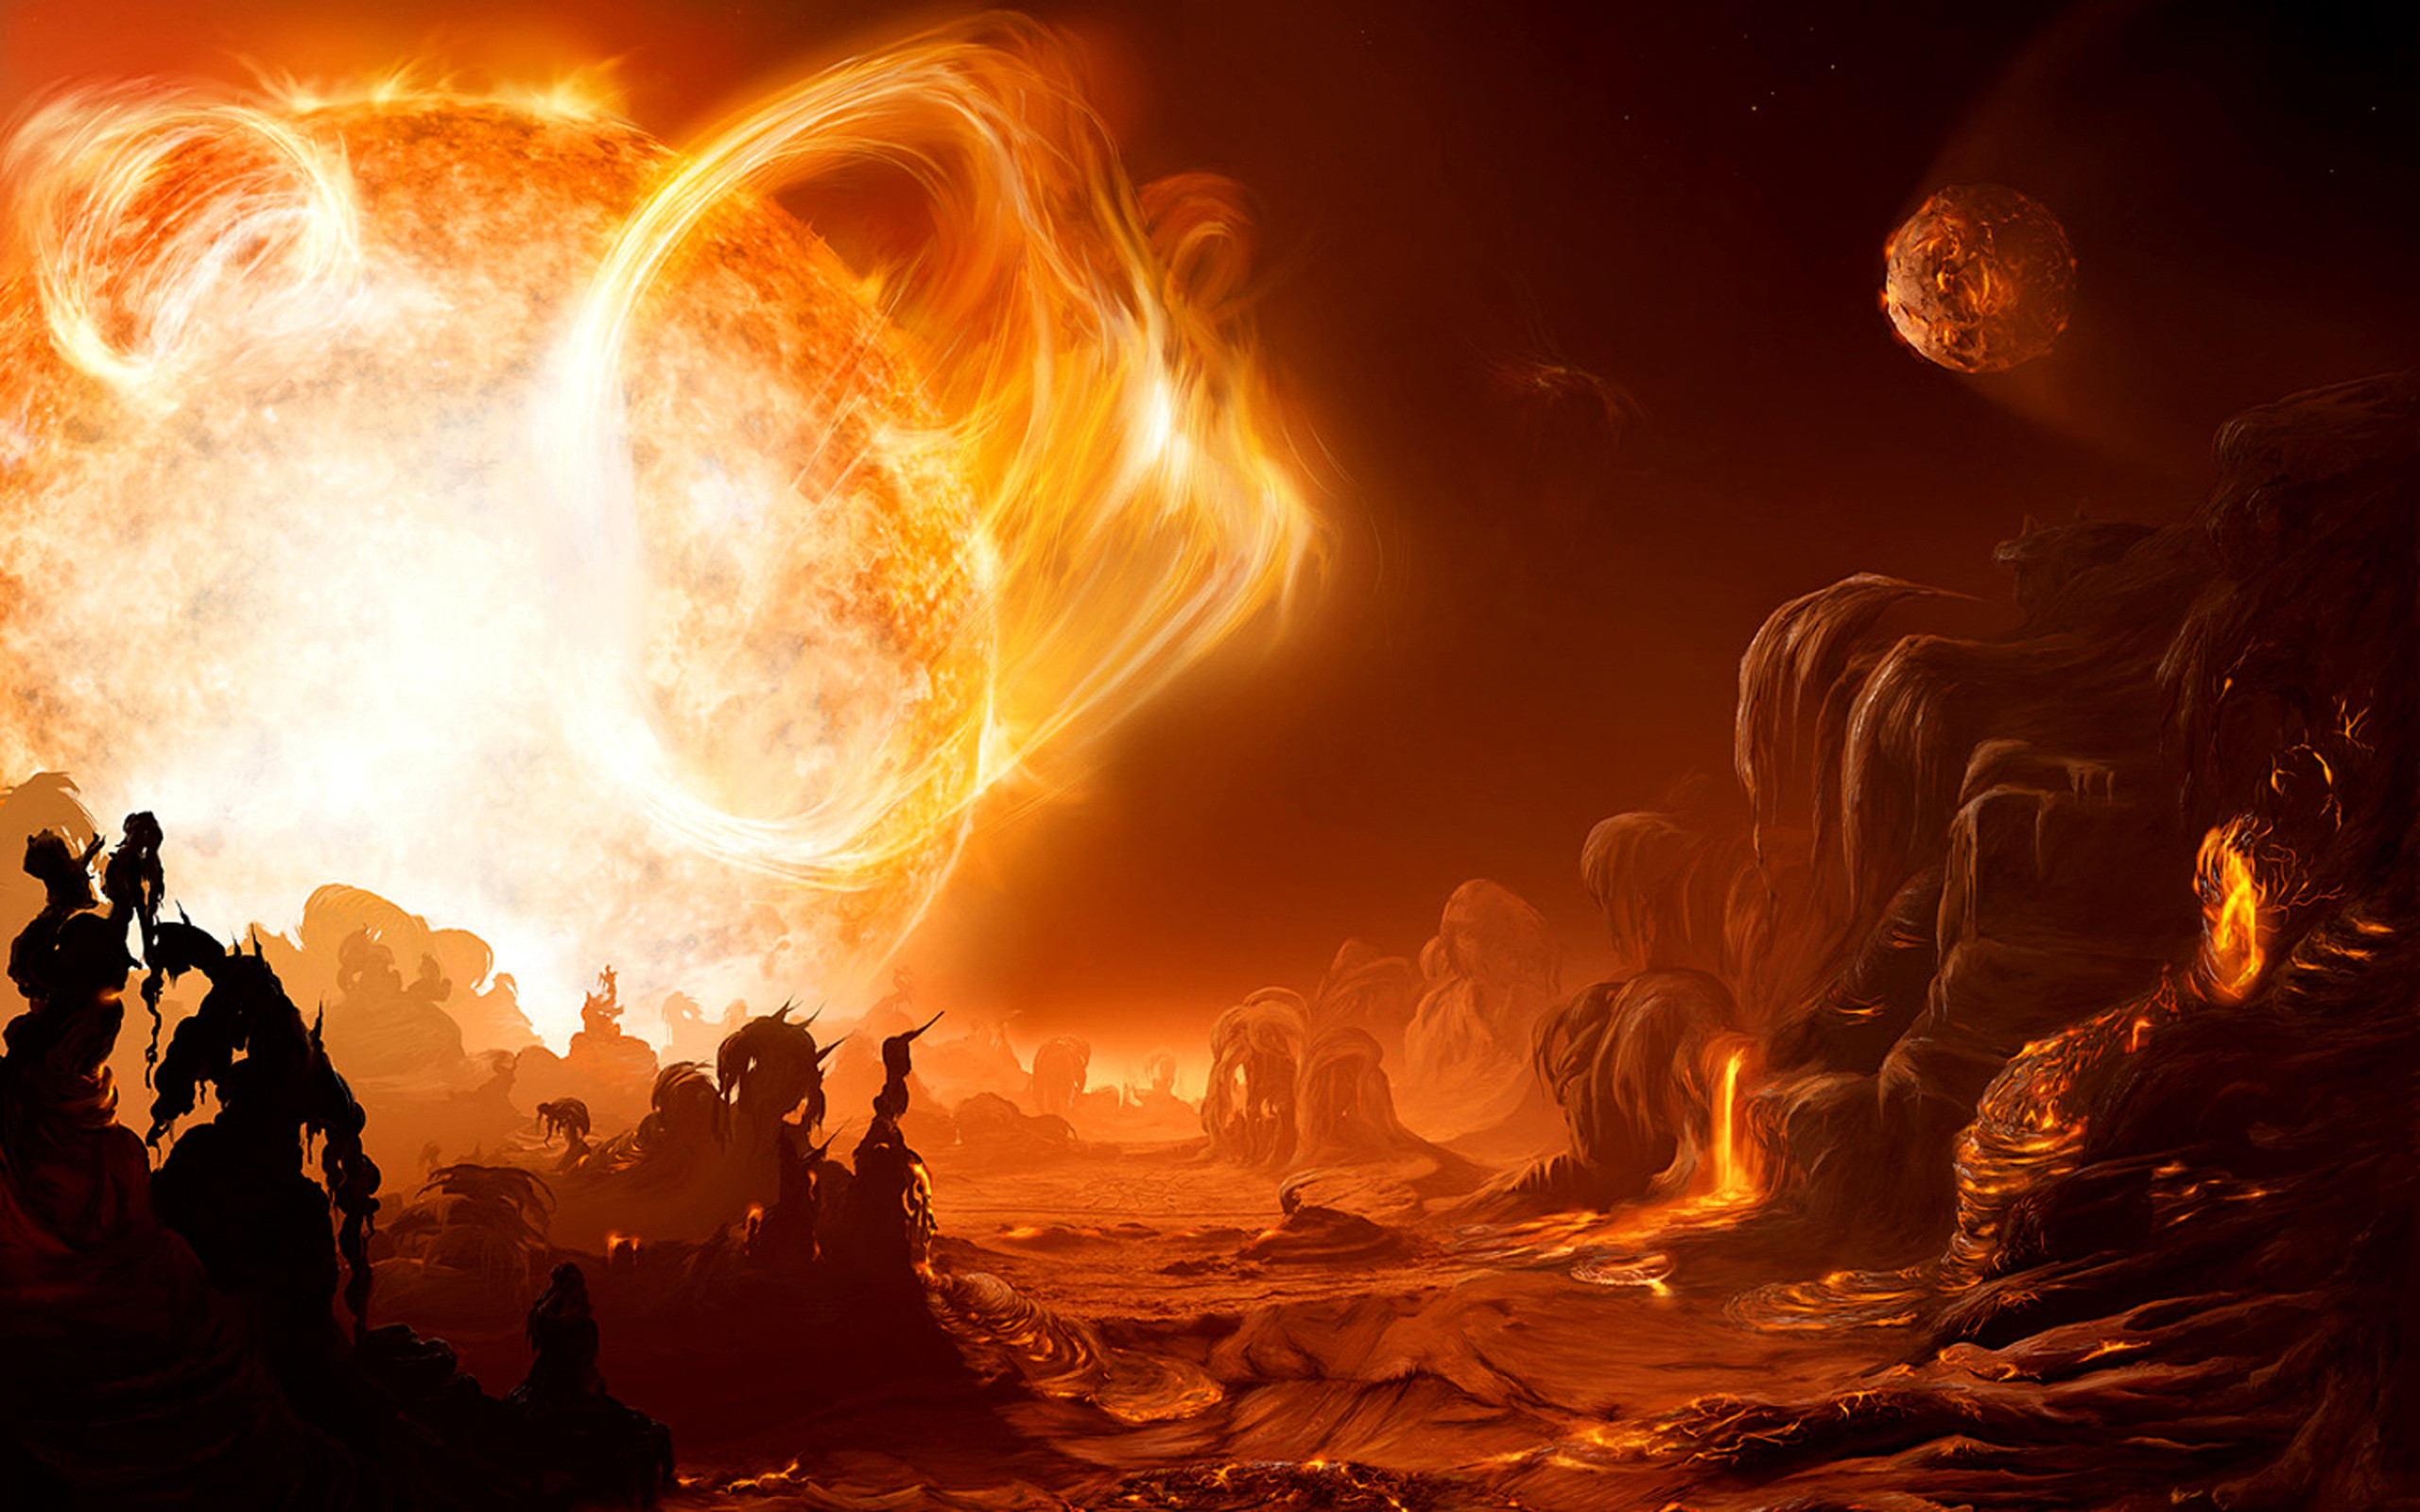 2560x1600 Sci fi science fiction alien landscape art artistic painting cg digital  landscapes fire flames sun hot lava solar space planets bright color  wallpaper ...